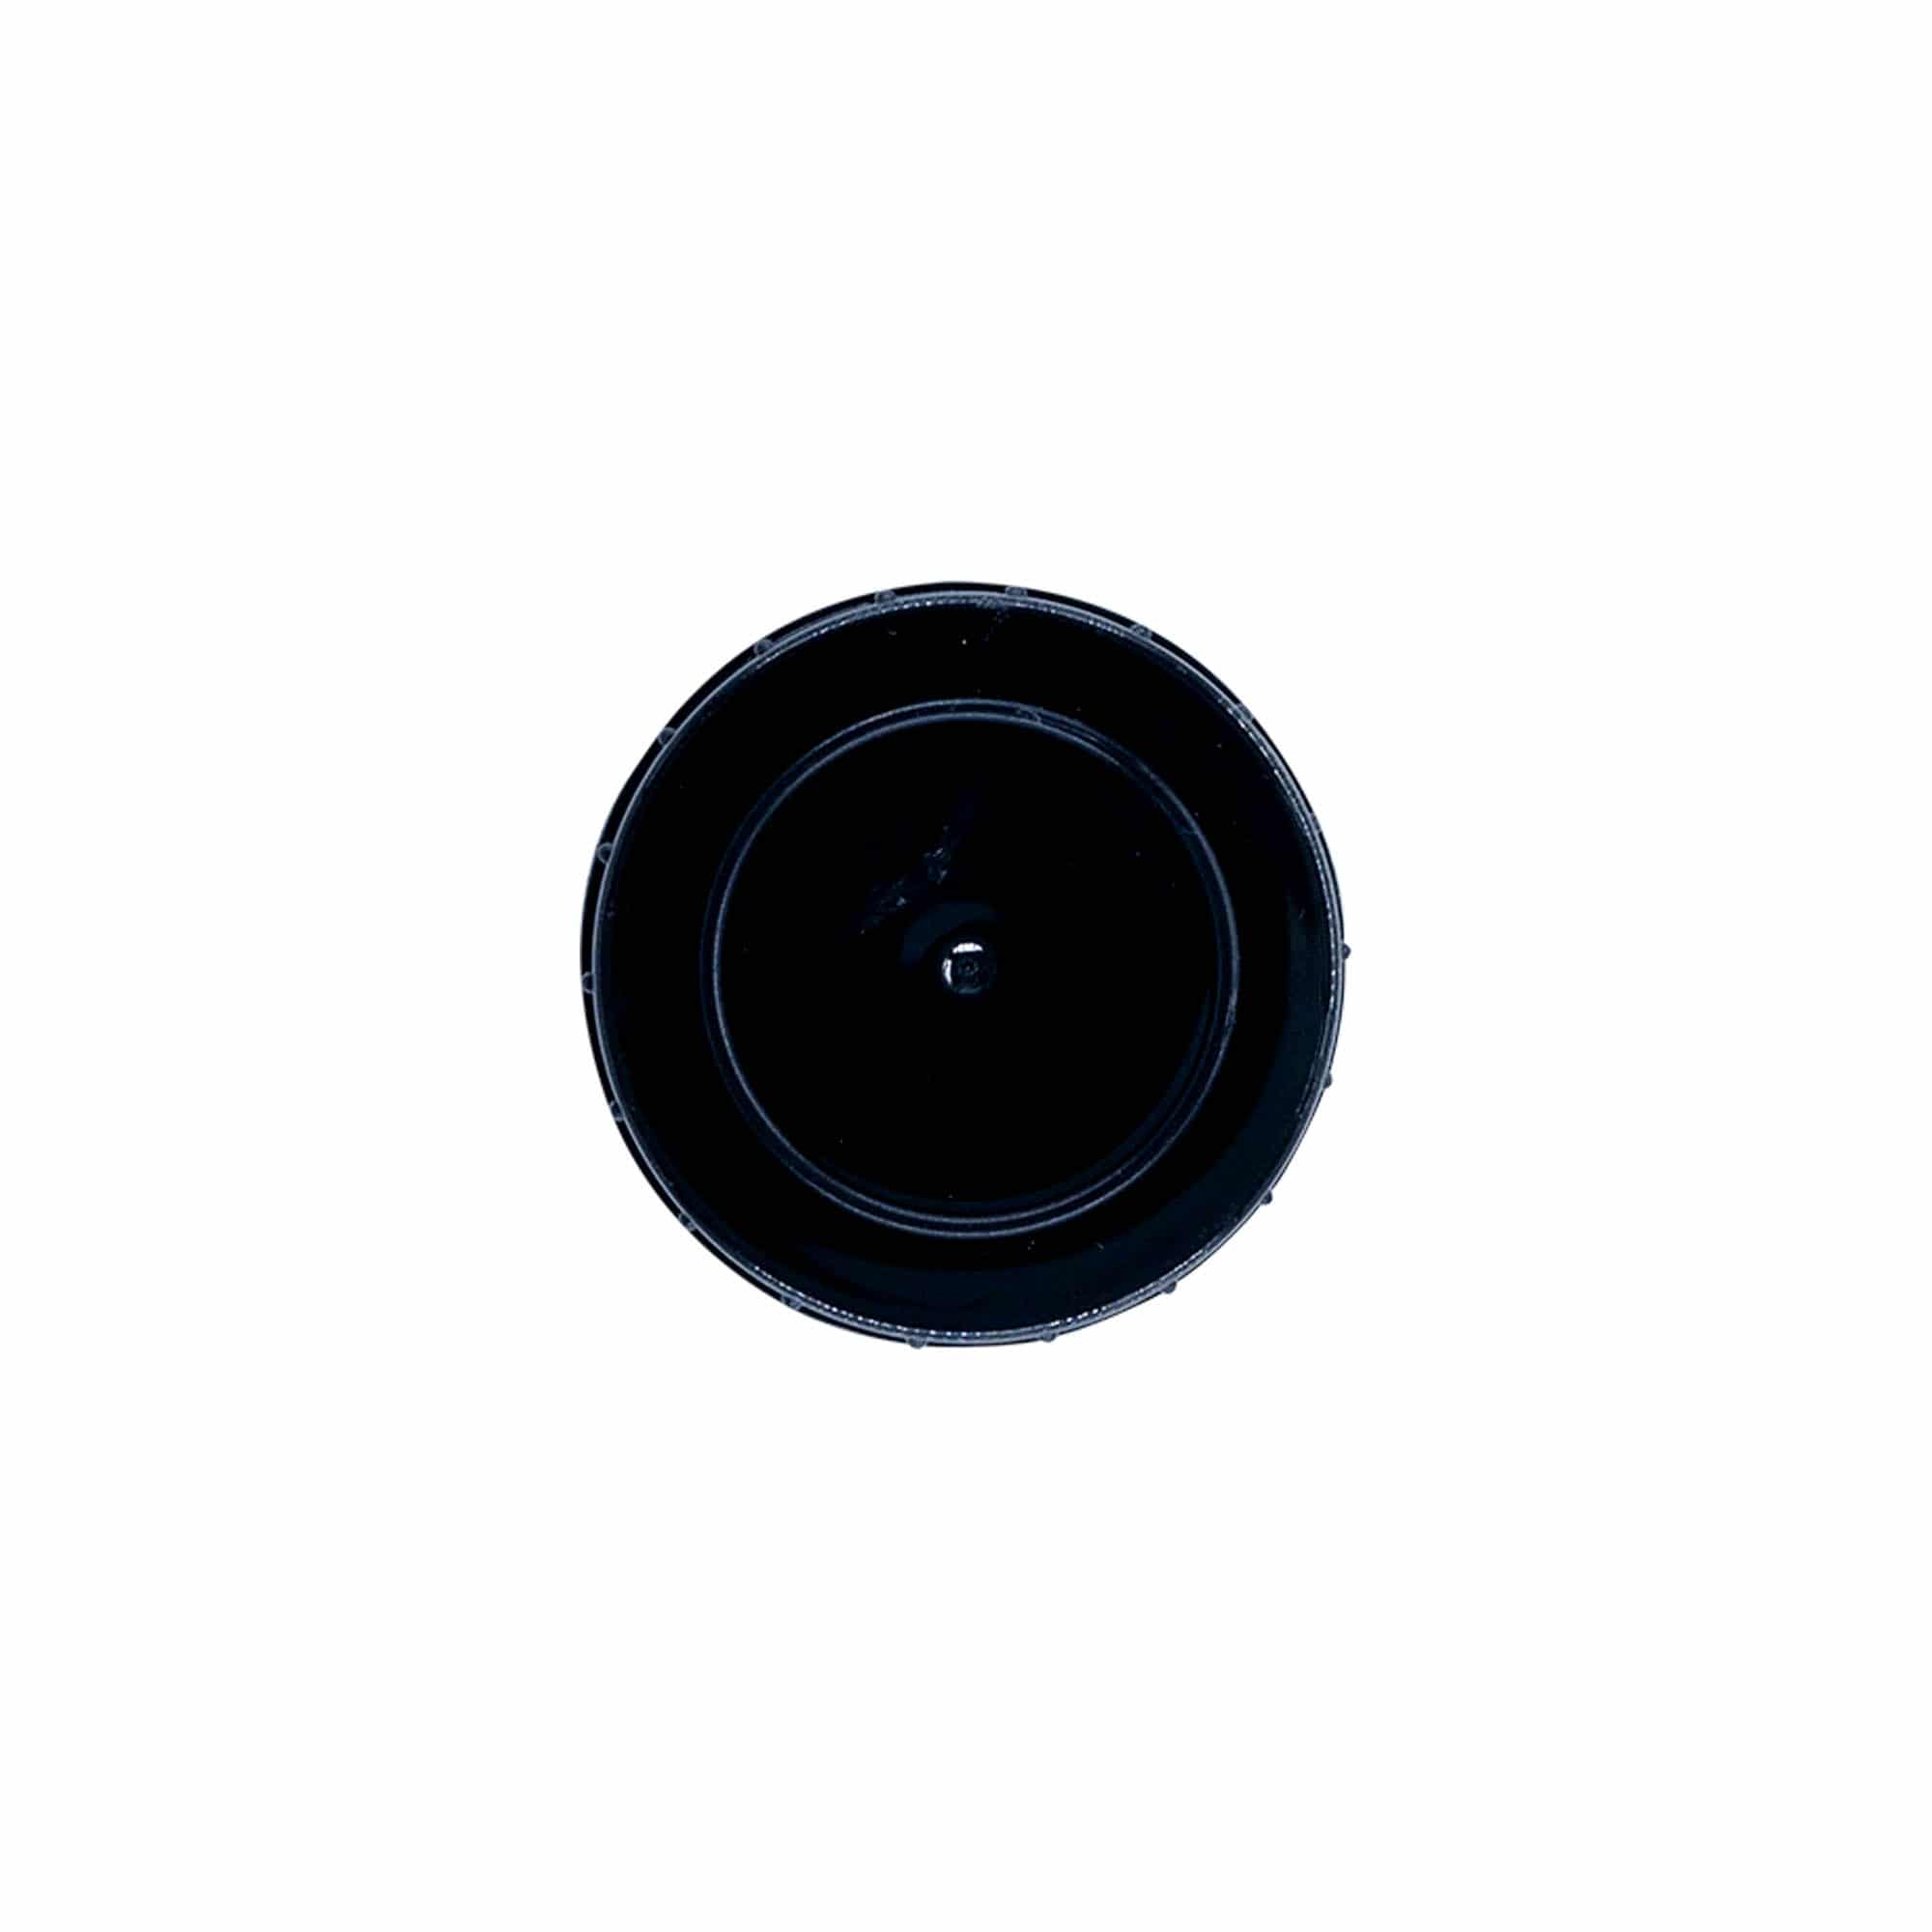 Schraubverschluss, PP-Kunststoff, schwarz, für Mündung: DIN 32